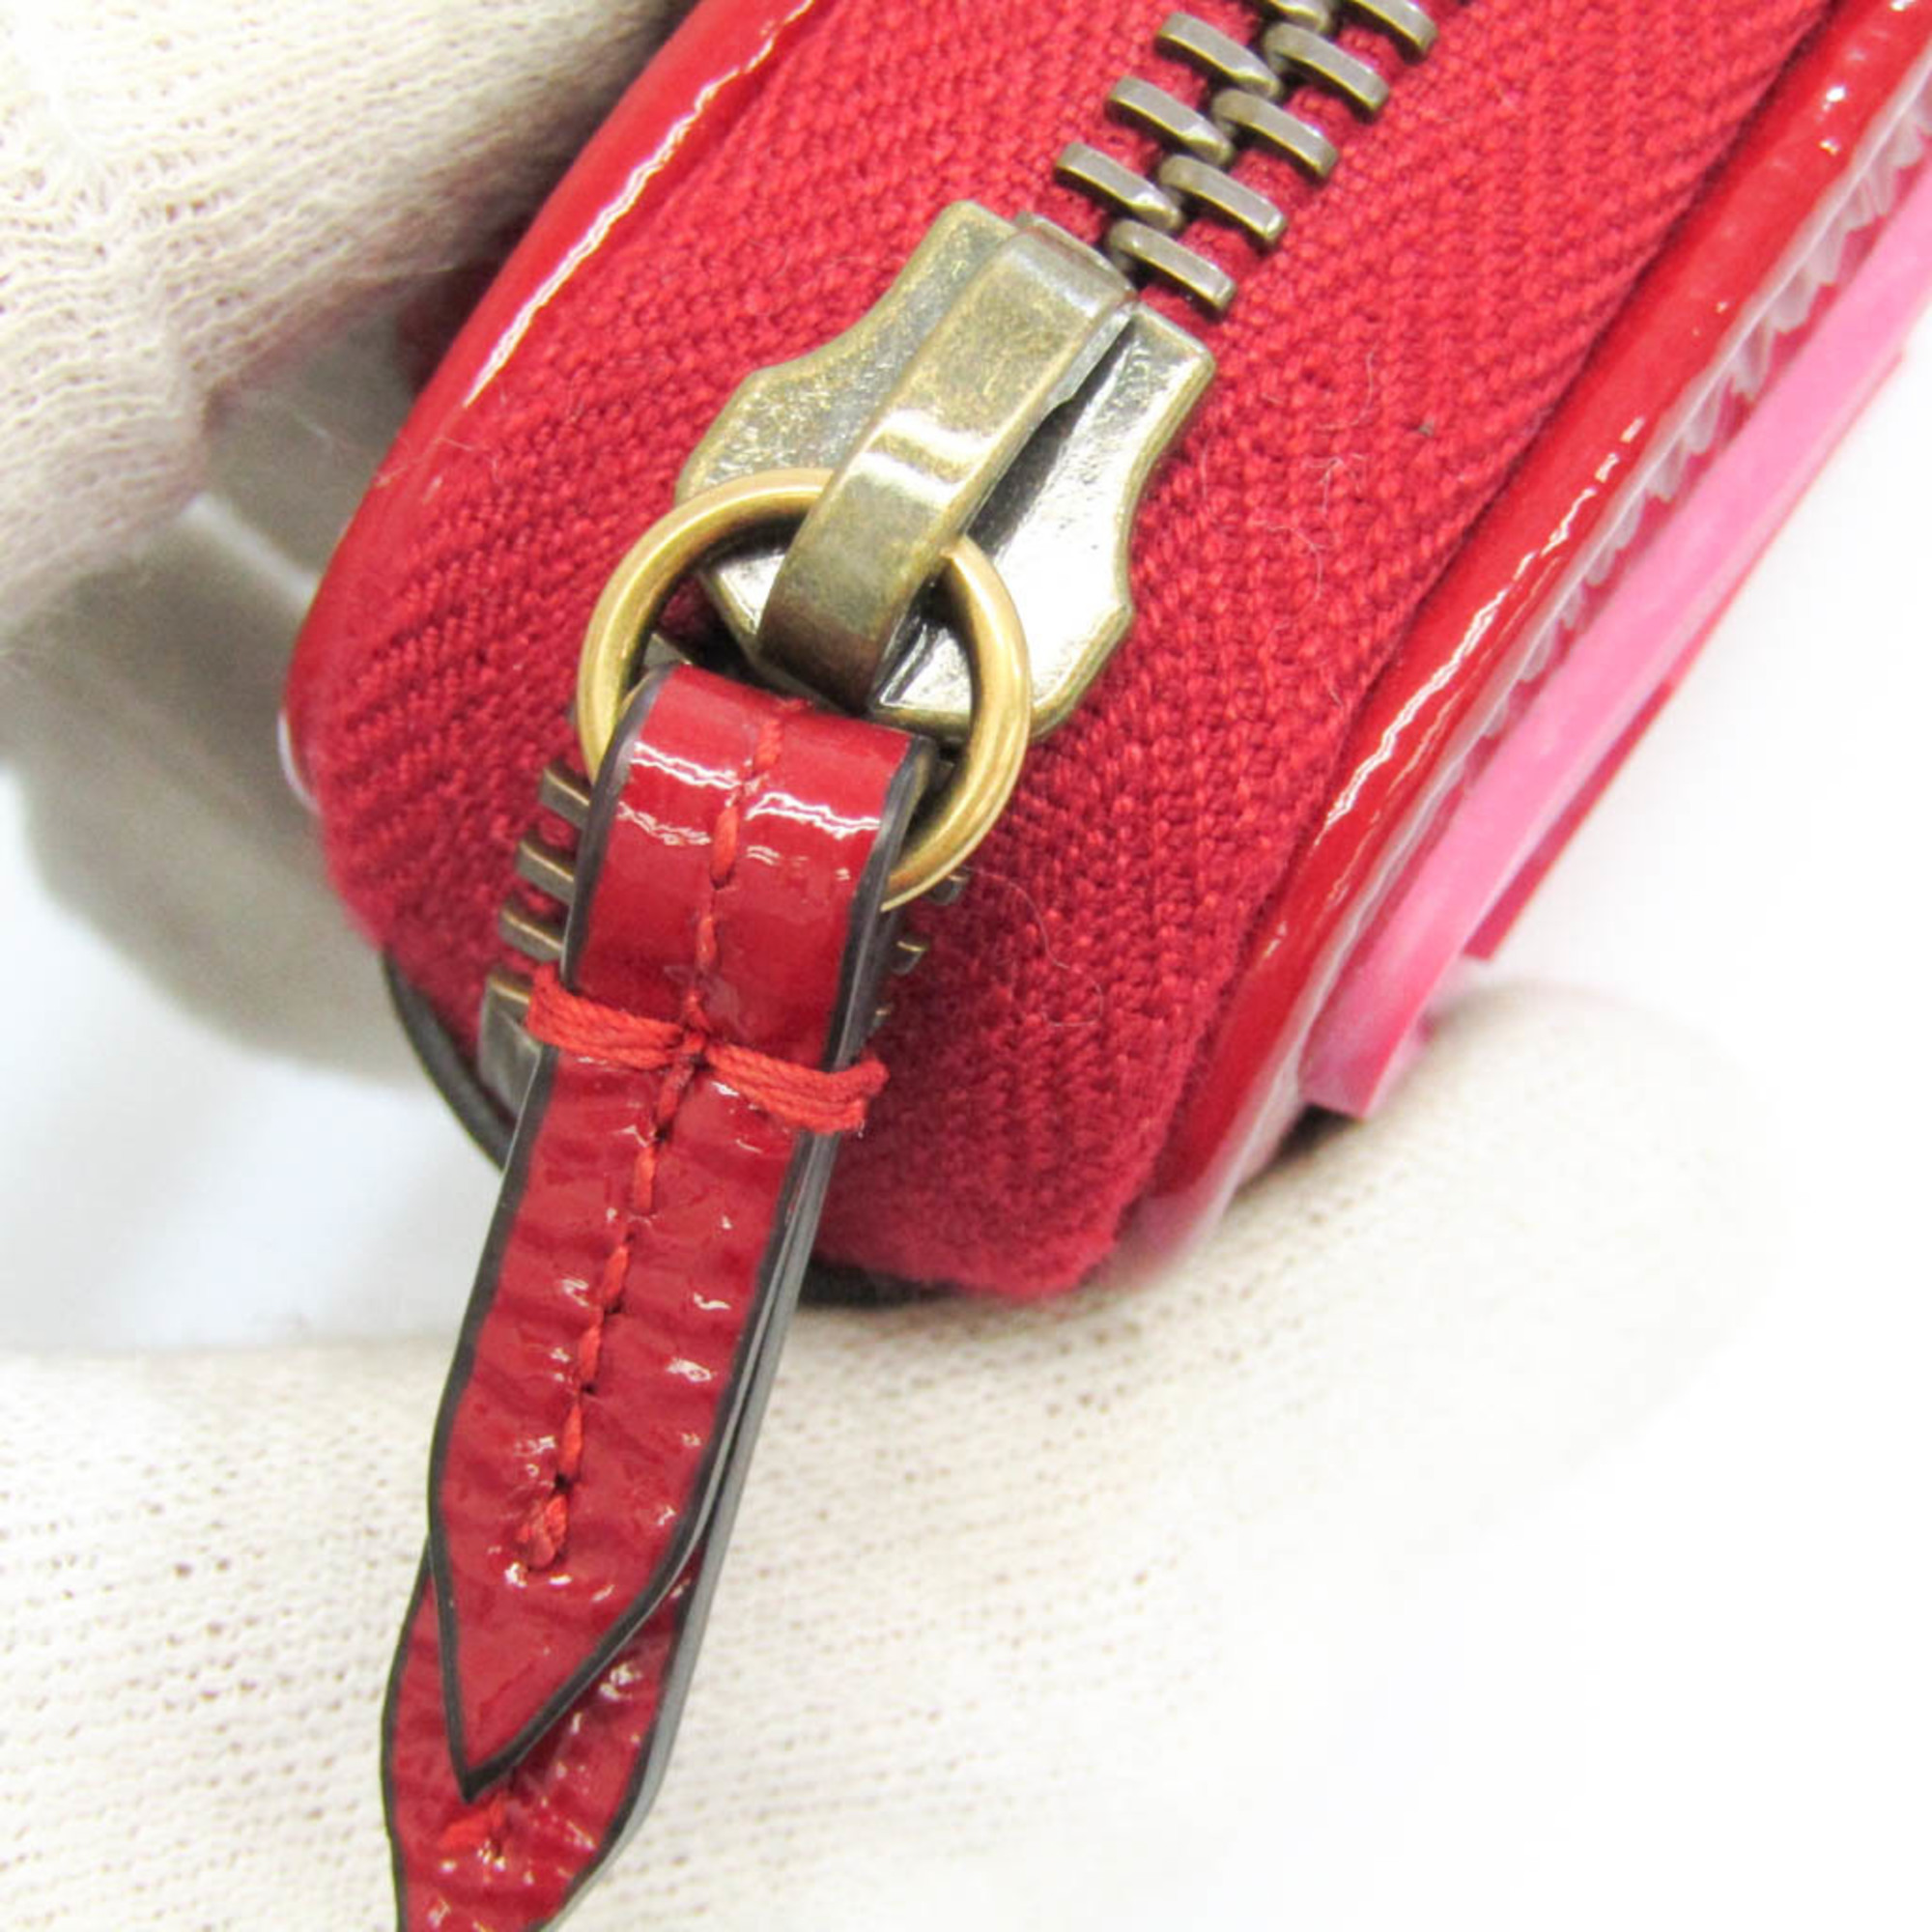 グッチ(Gucci) Patent Rubber Game Patch Logo Wrist Bag 524318 レディース パテントレザー ポーチ ピンク,レッド